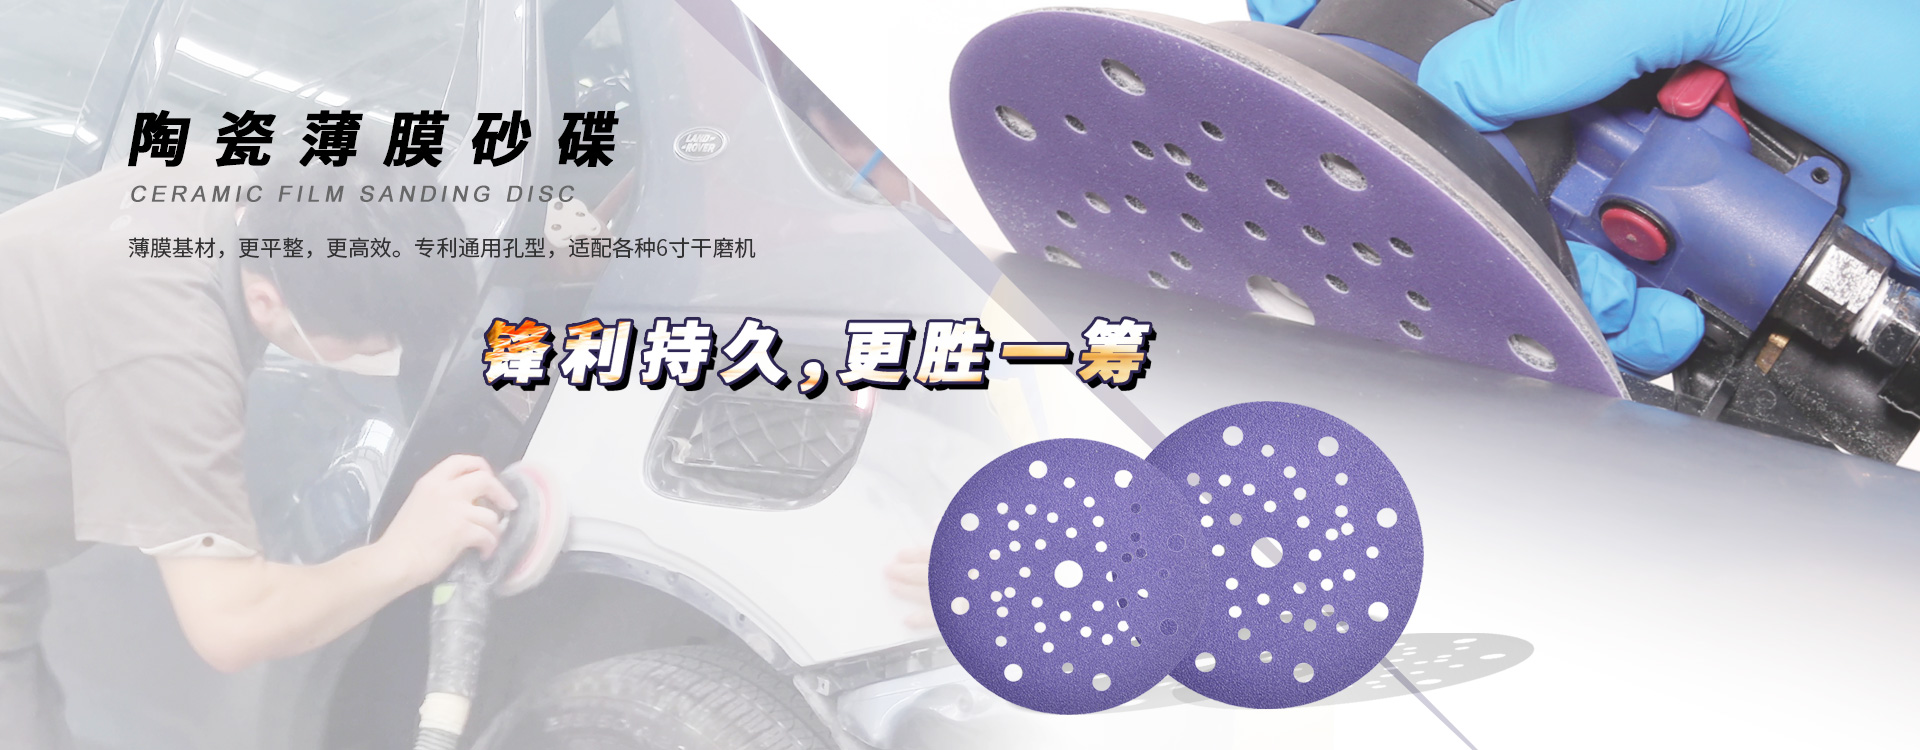 紫砂通用孔，适配各种常规6寸干磨机